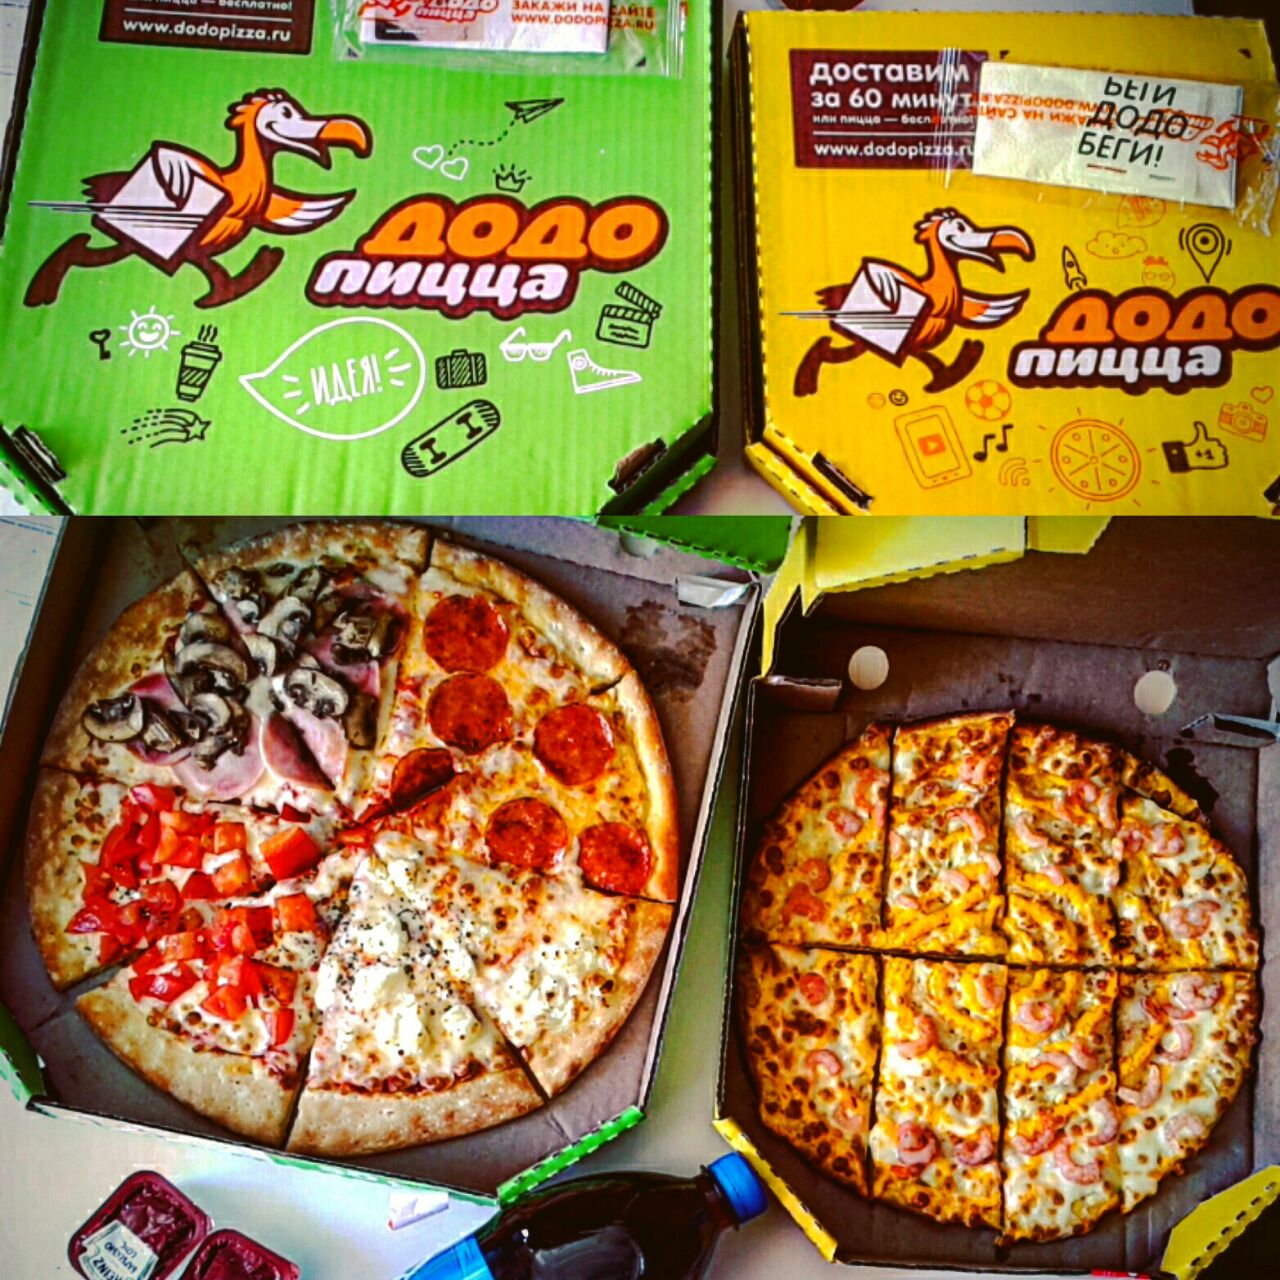 четыре сезона пицца додо отзывы фото 96